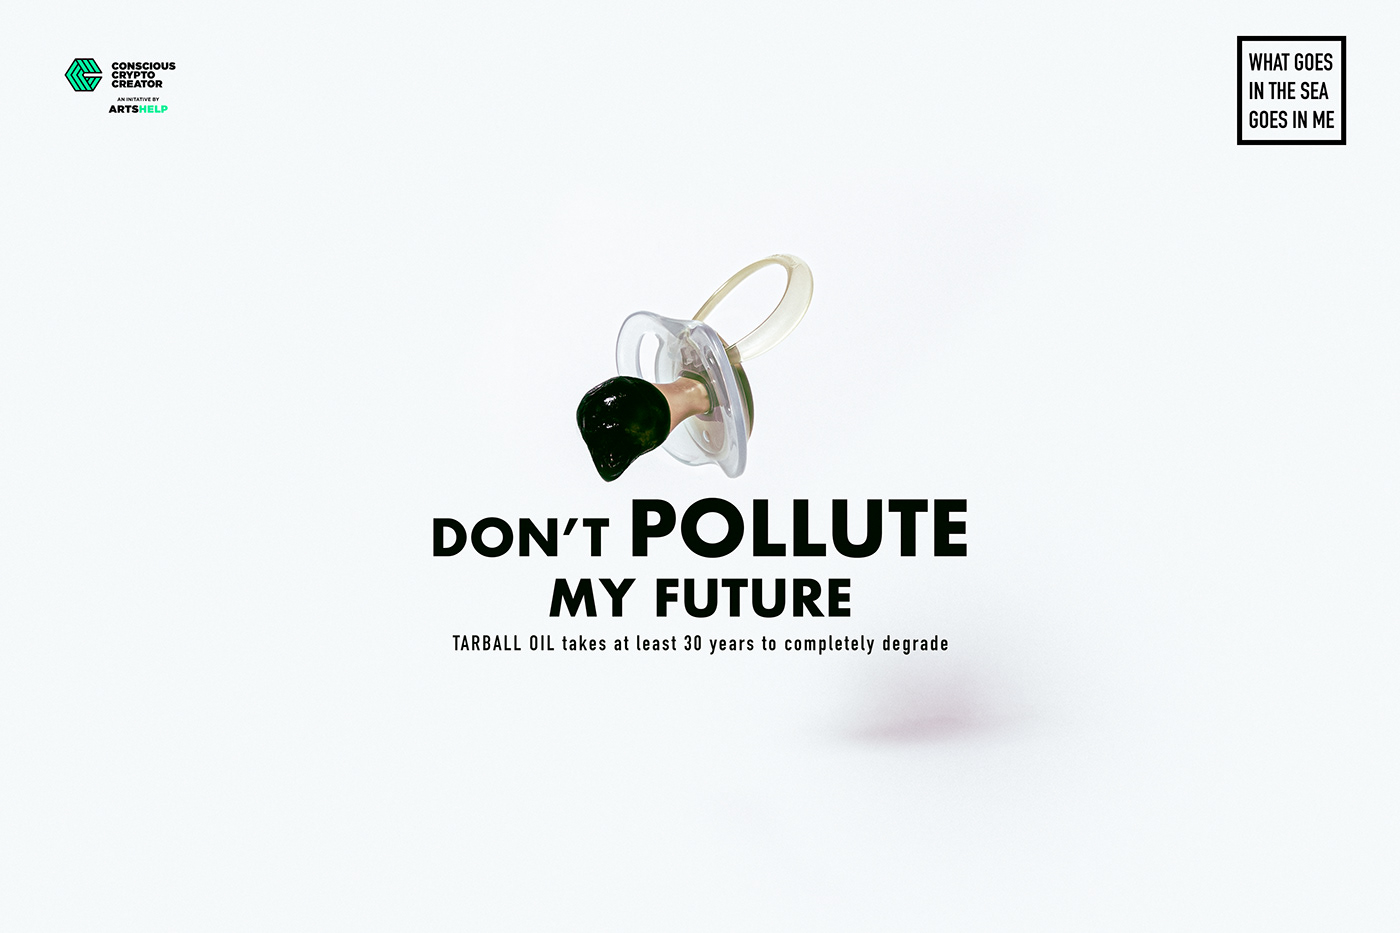 ads artshelp campaign climate change talenthouse